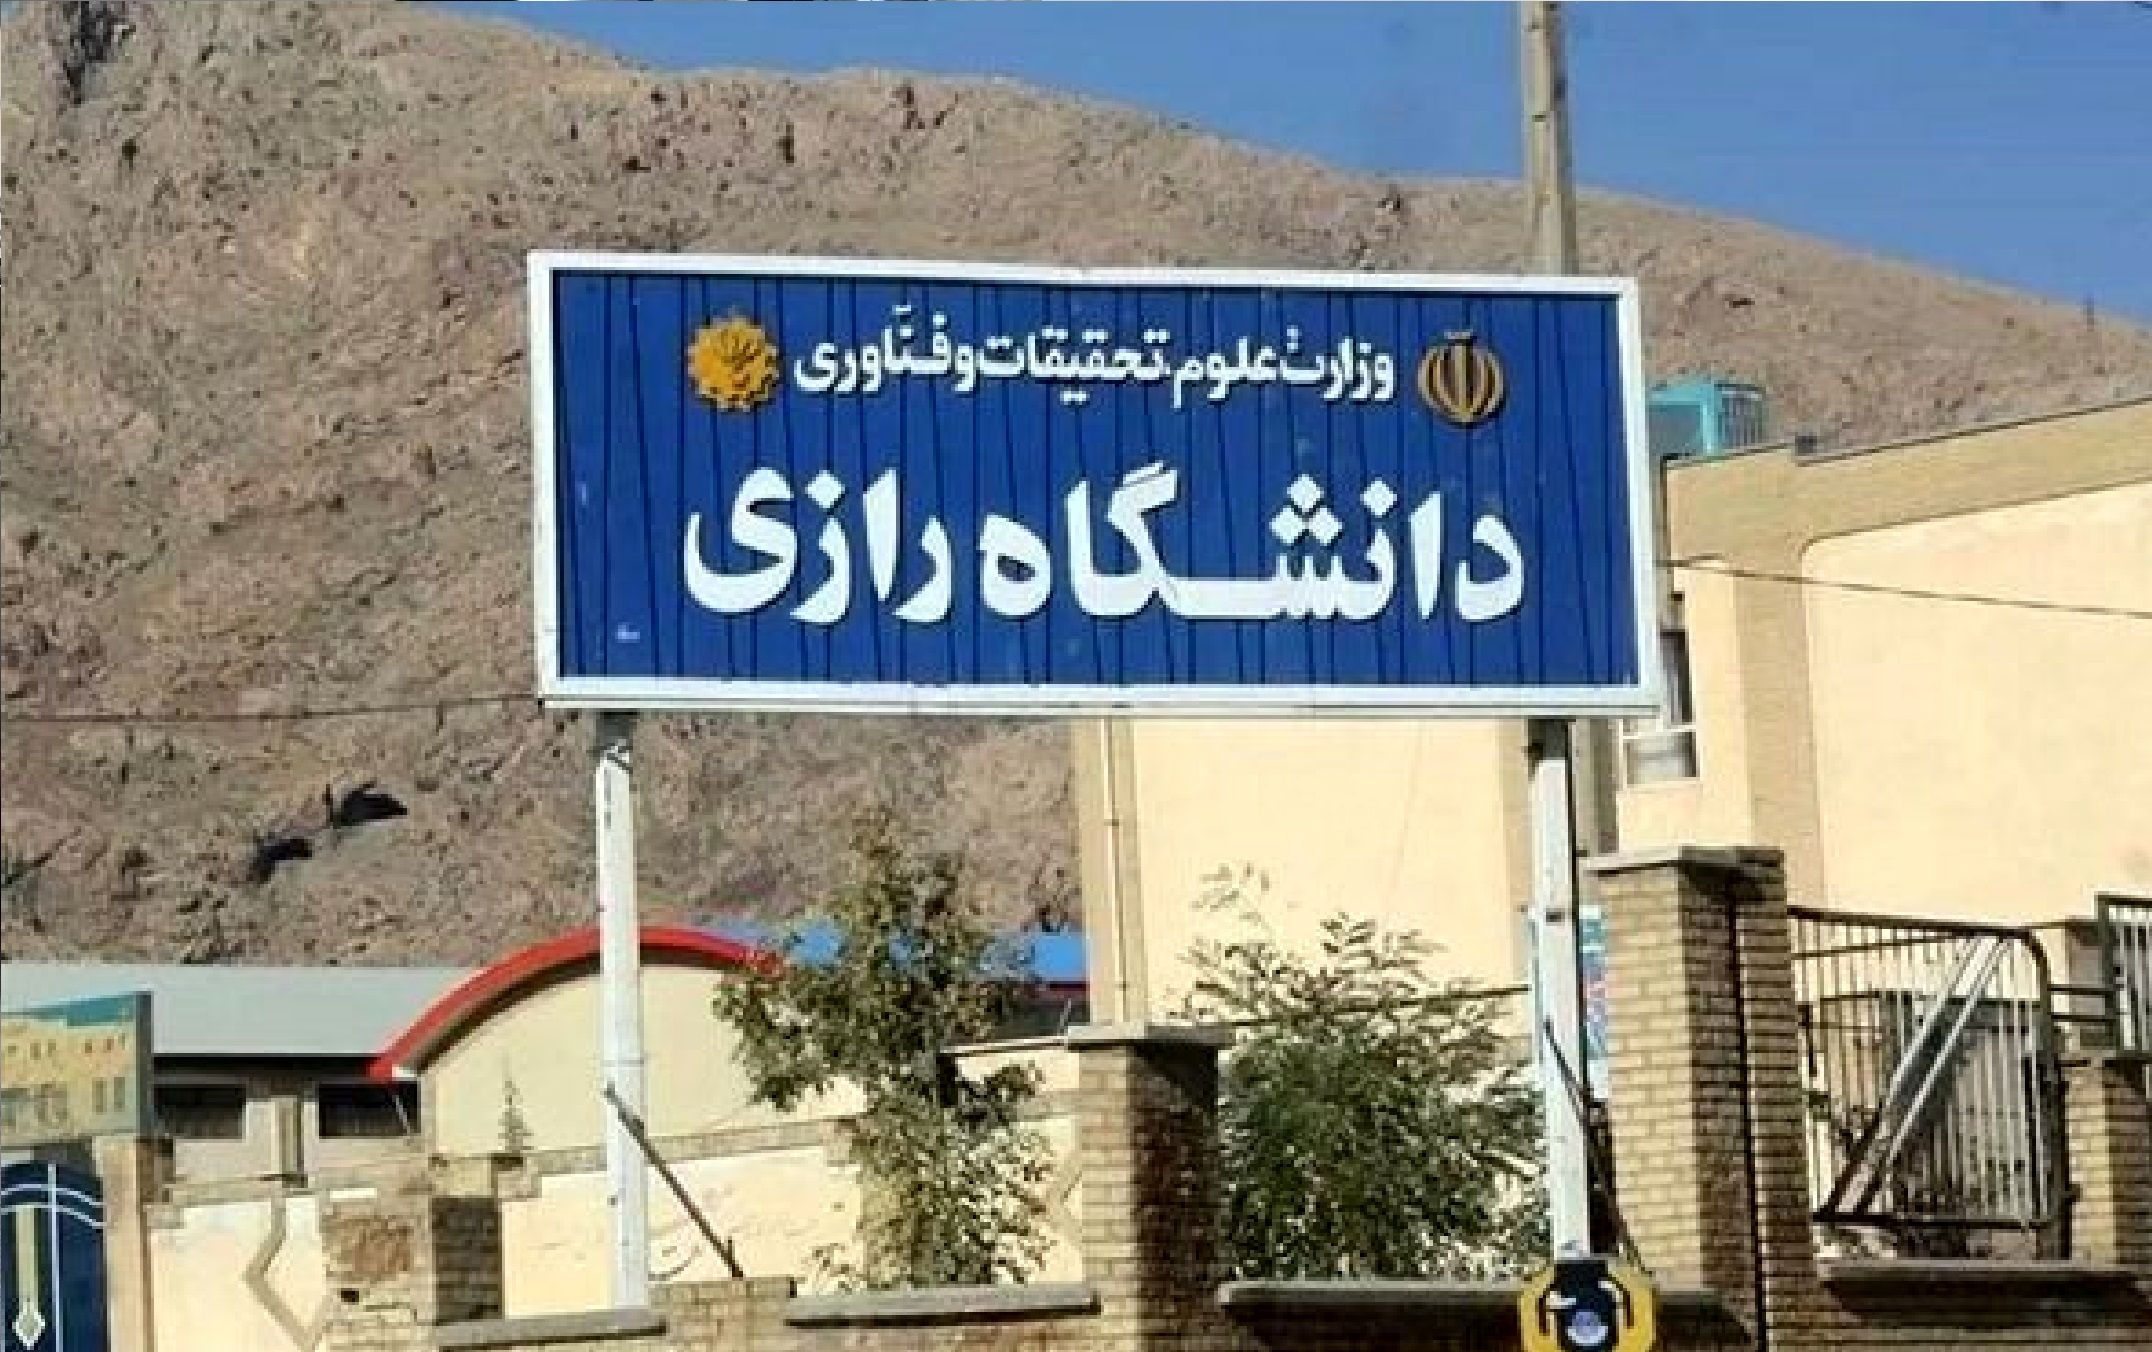 خبر جدید از مصدومان حادثه ریزش سقف دانشگاه در کرمانشاه